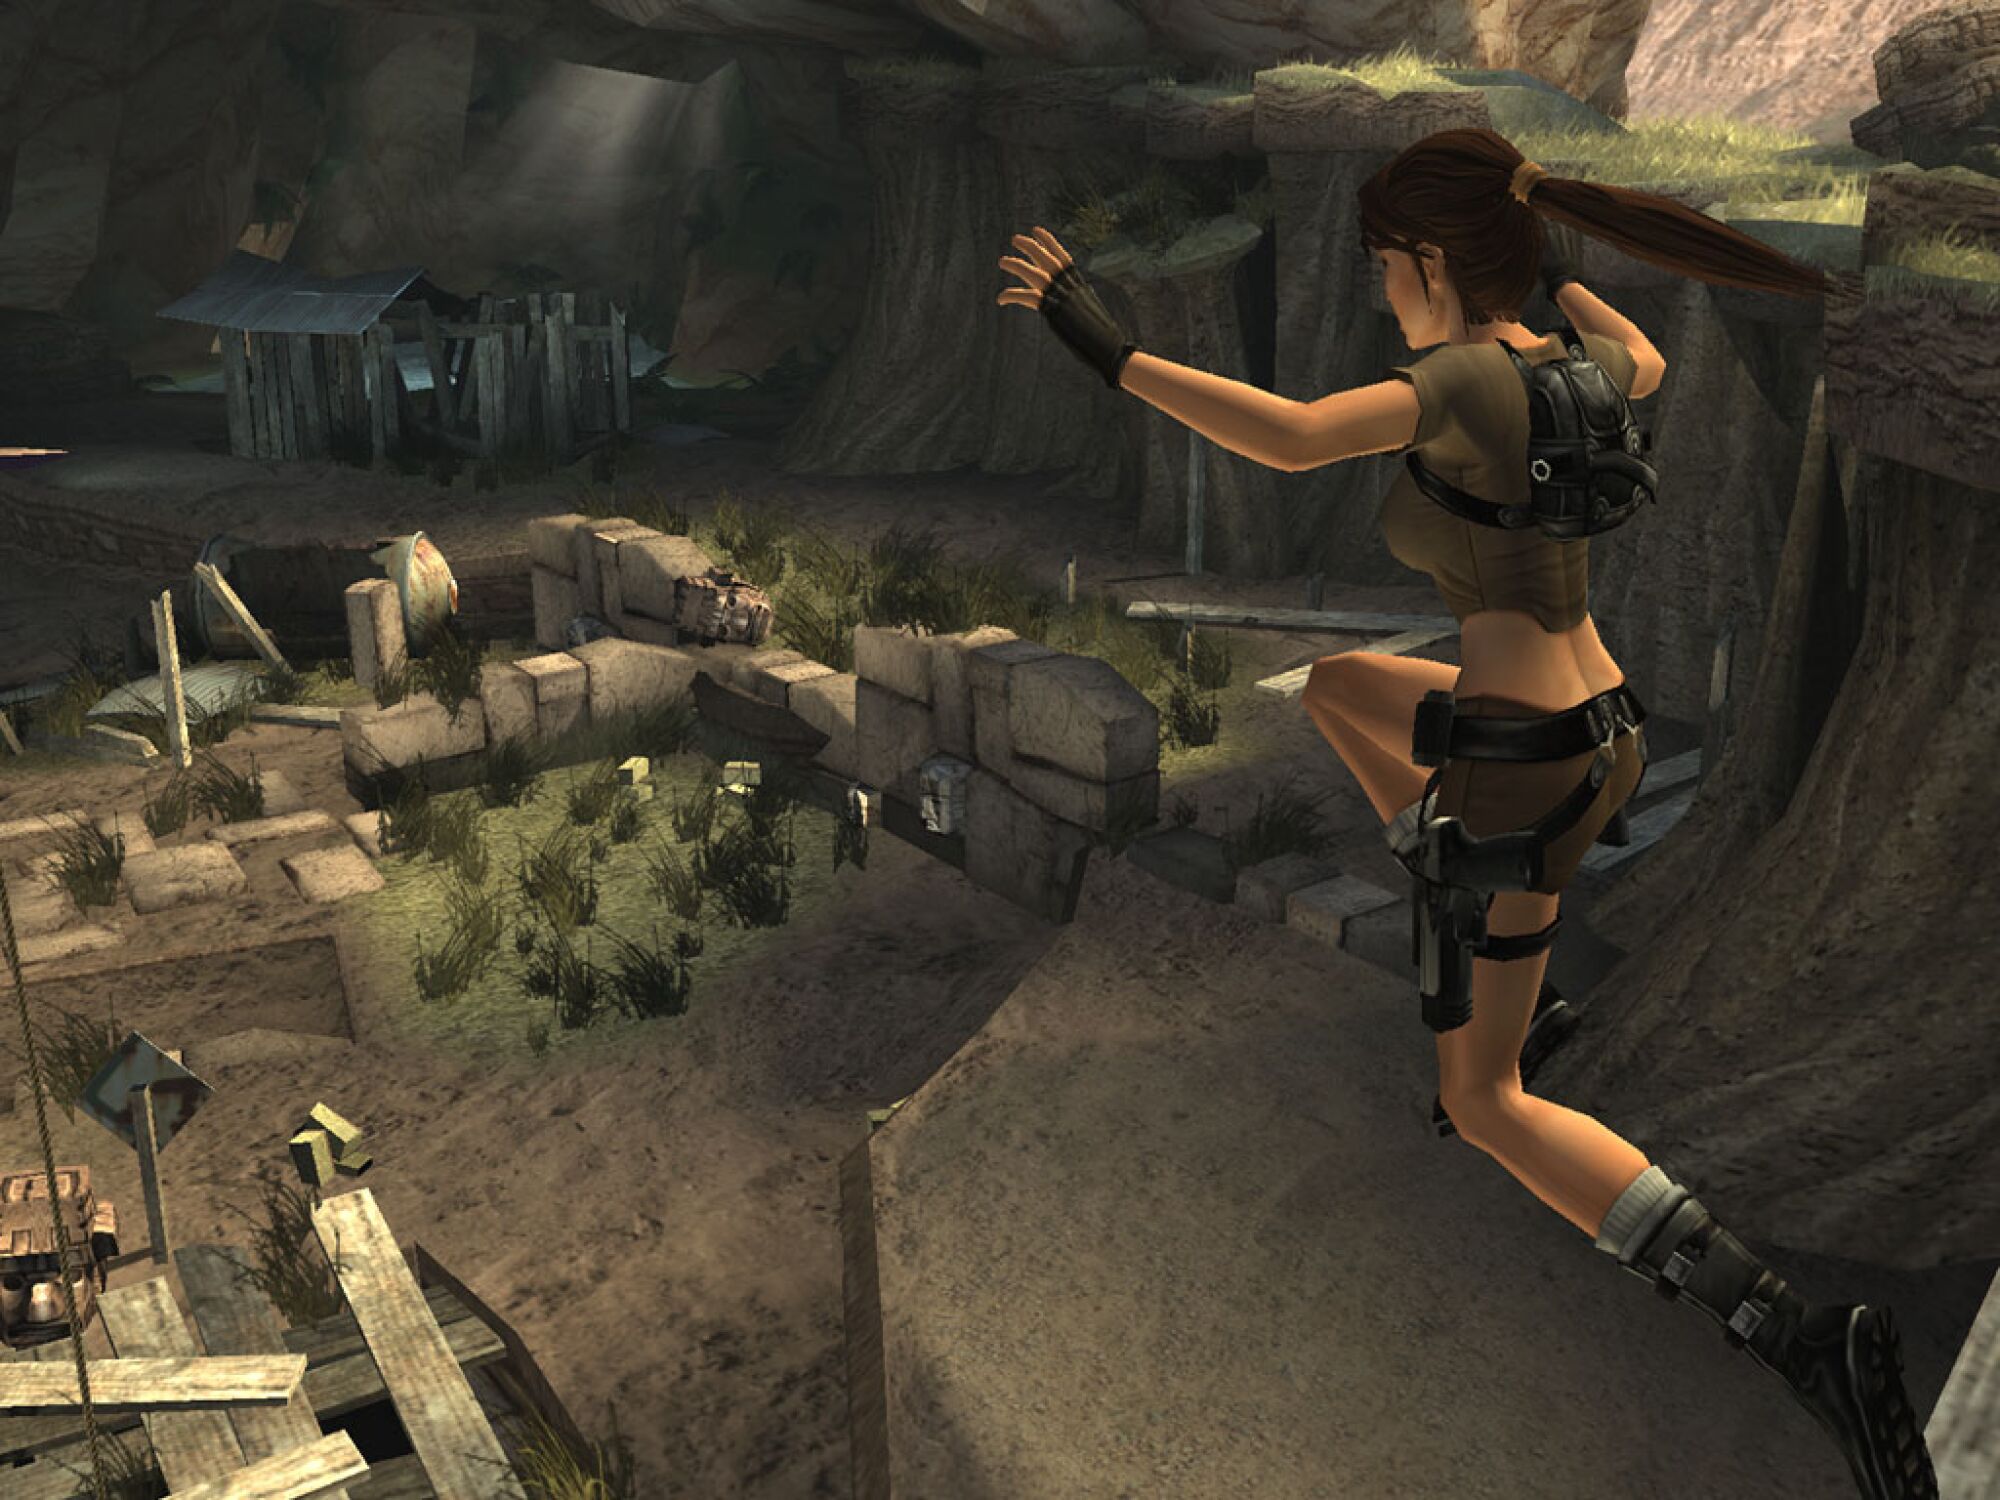 Bir ekran görüntüsü, bilgisayar tarafından oluşturulan bir kadını mağara benzeri bir ortamda atlamanın ortasında gösteriyor.